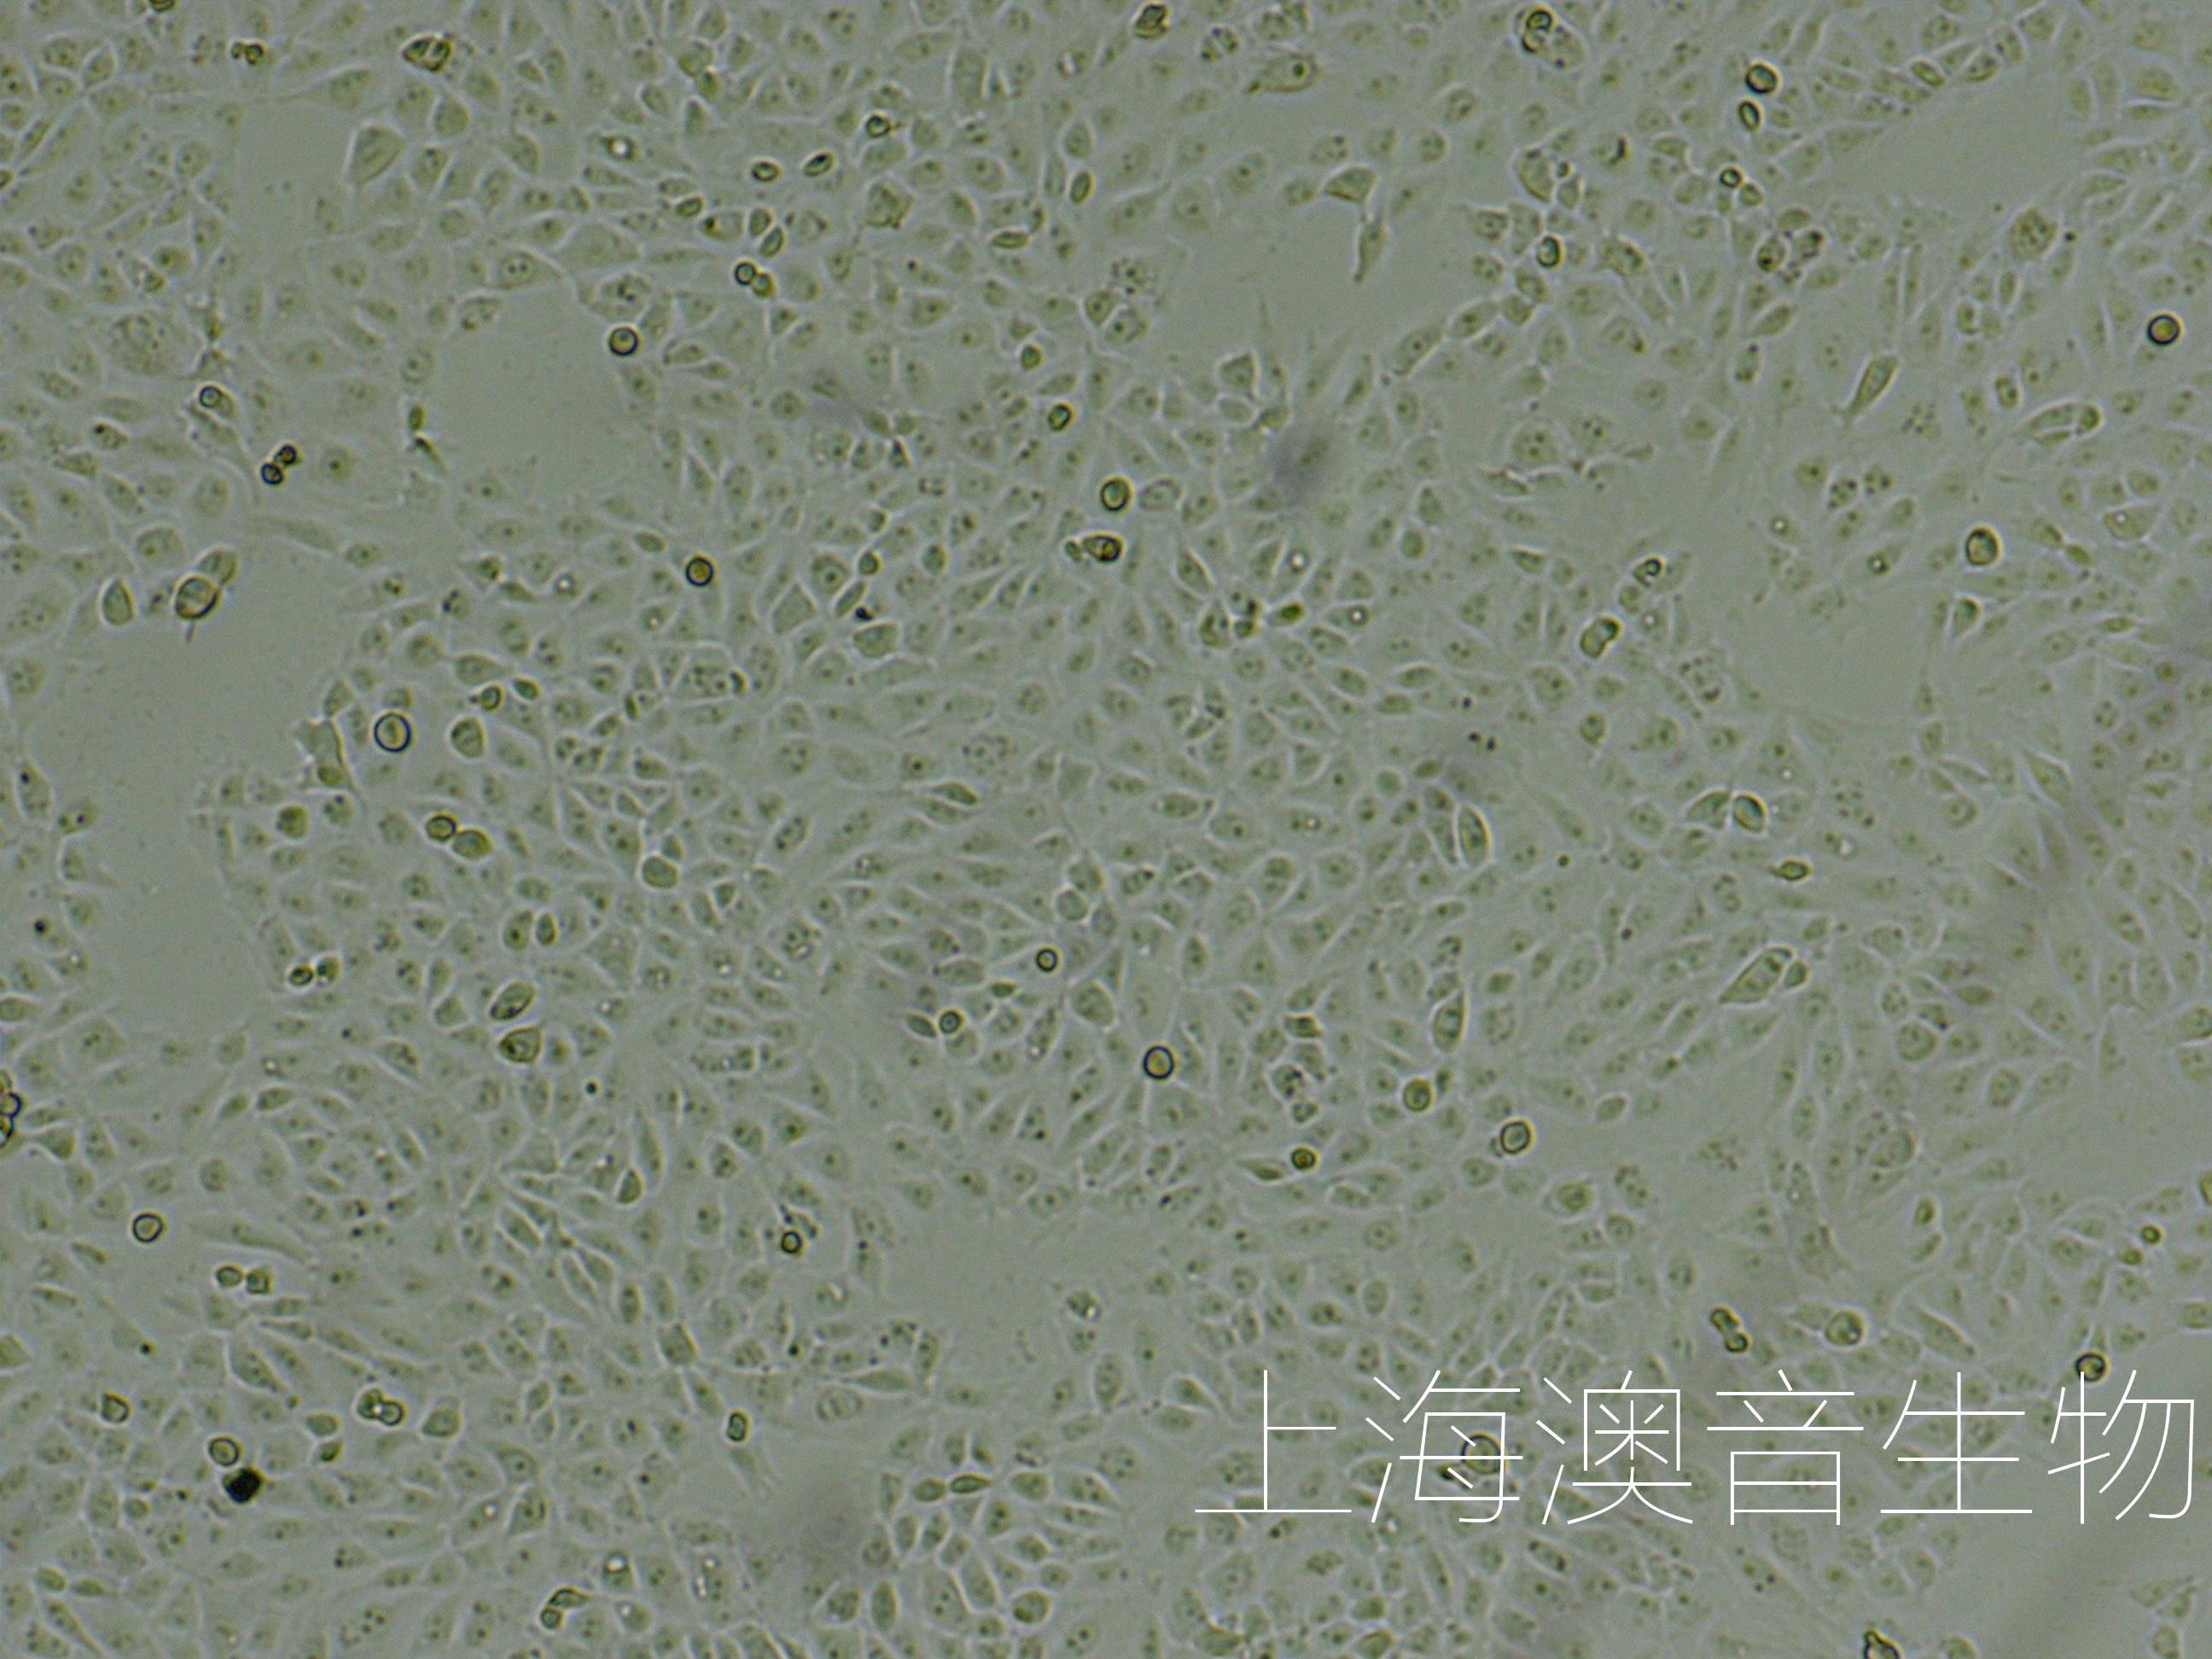 张永亮/习欠云团队在猪乳小细胞外囊泡（sEV）研究取得新进展